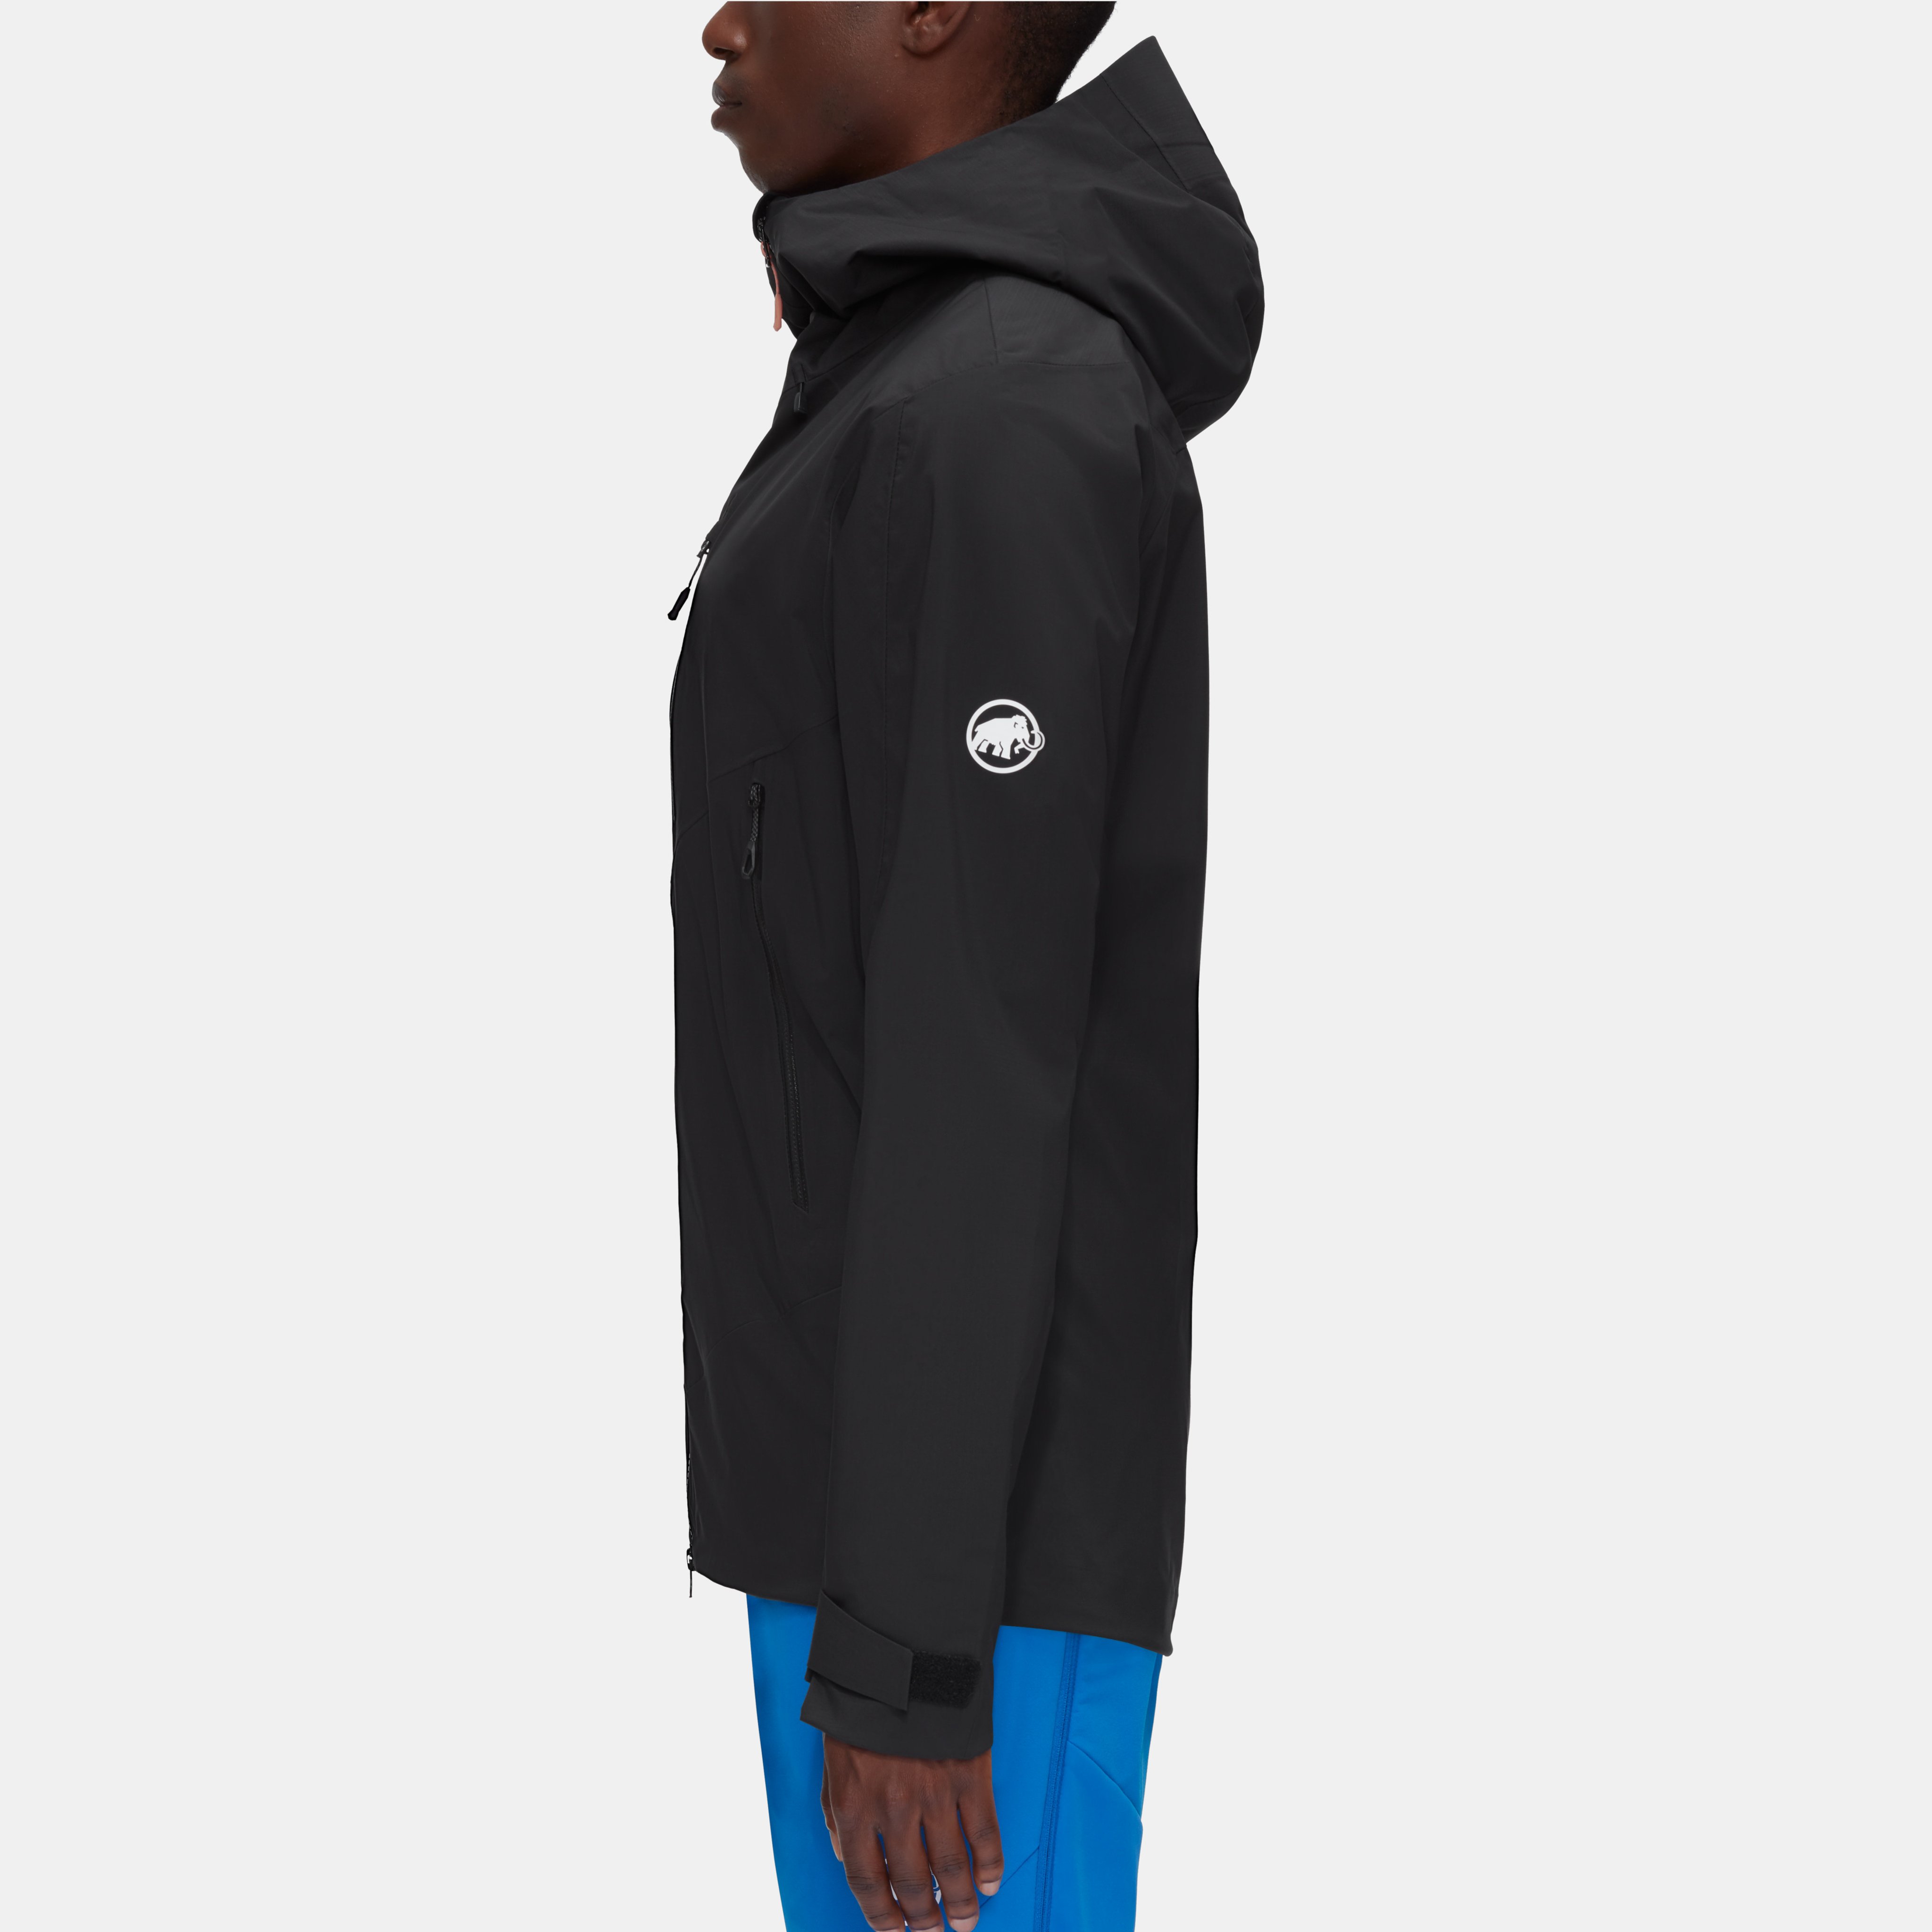 Kento HS Hooded Jacket Men product image